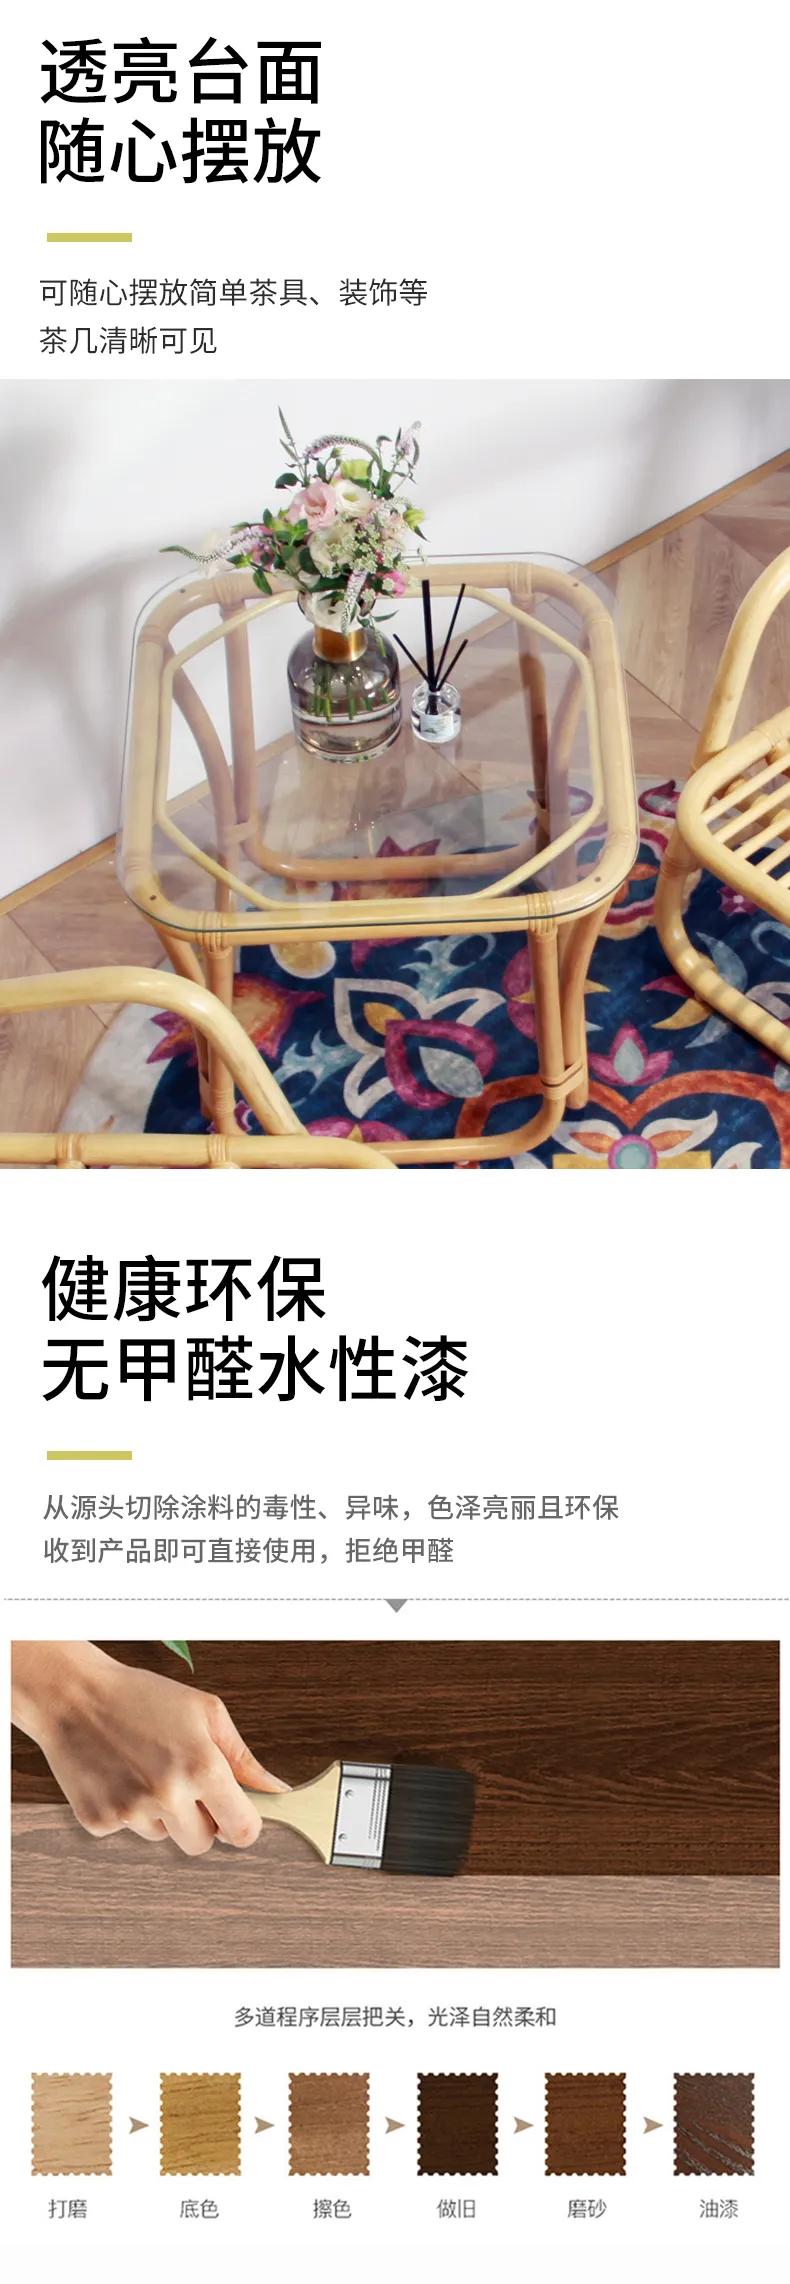 华松居 阳台藤椅系列印尼进口玛瑙藤 纯手工编织藤椅家具#罗马椅(图8)